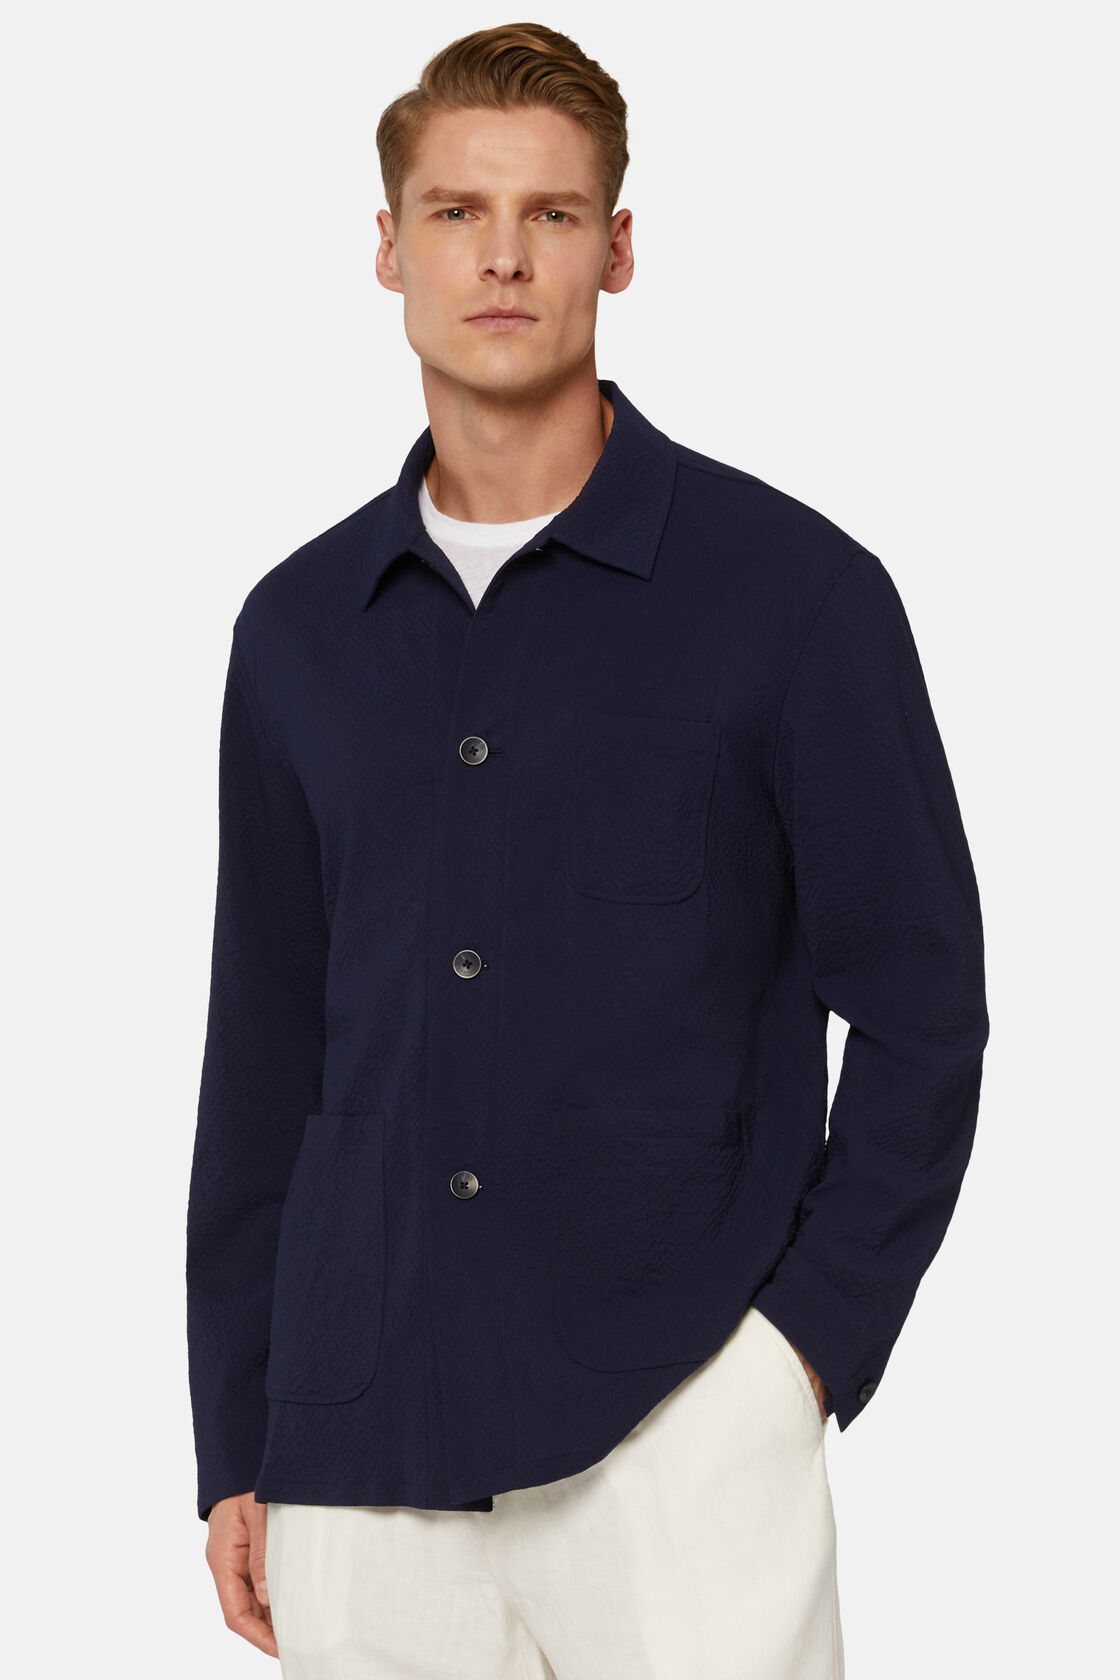 Granatowa kurtka koszulowa z wełny seersucker, Navy blue, hi-res